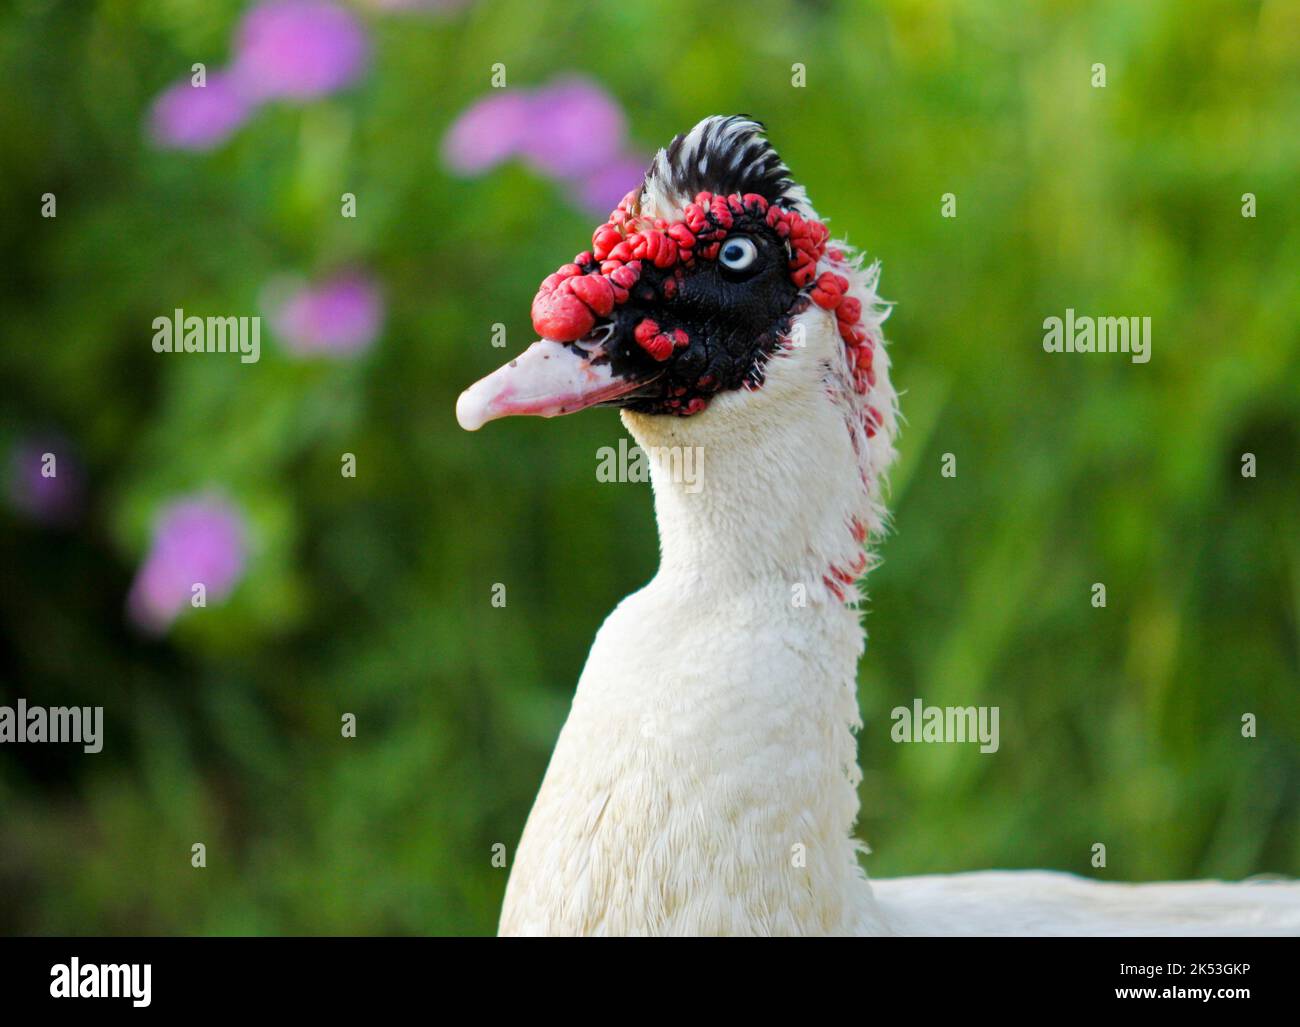 Un gros plan de canard de Muscovy domestique avec des plumes blanches et un visage noir et rouge Banque D'Images